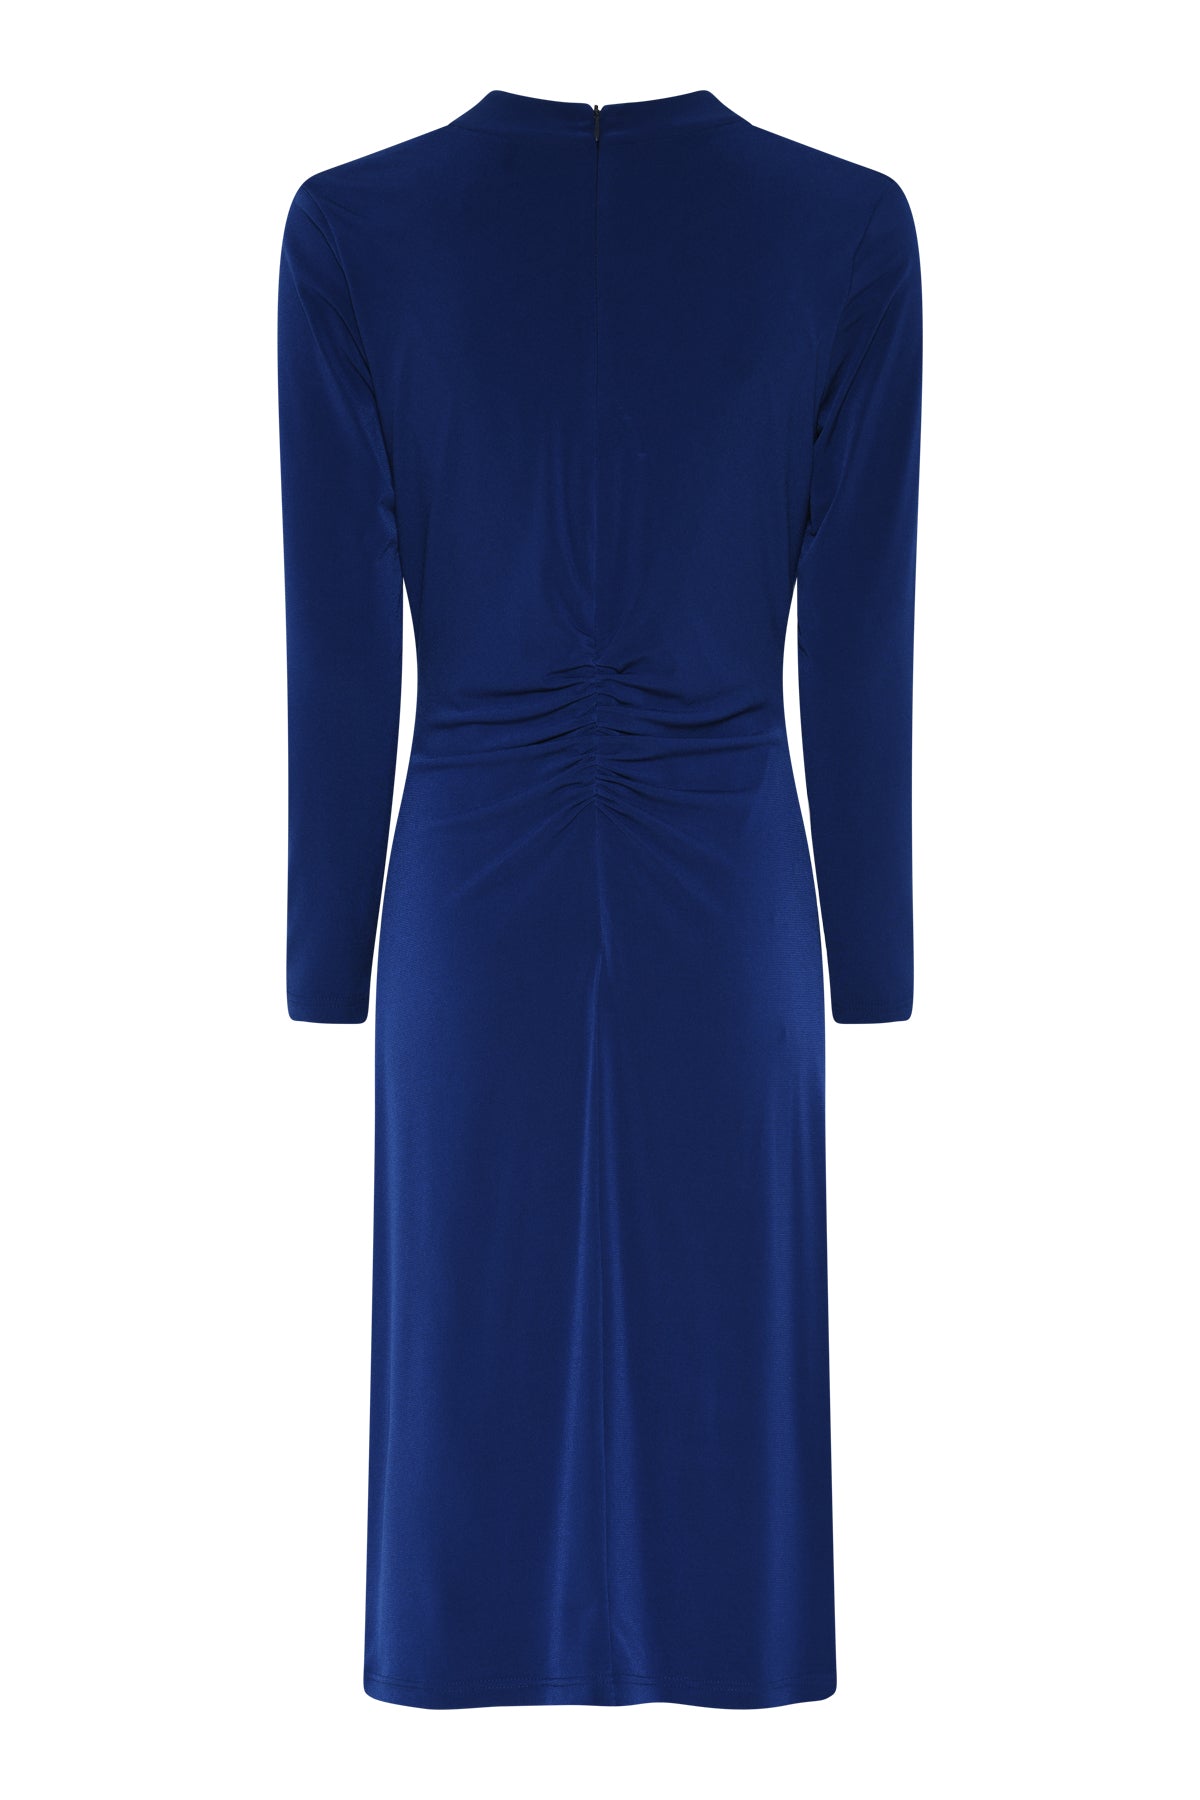 Tia 78418 Cobalt Blue With Diamante Sparkle Sleeved Dress